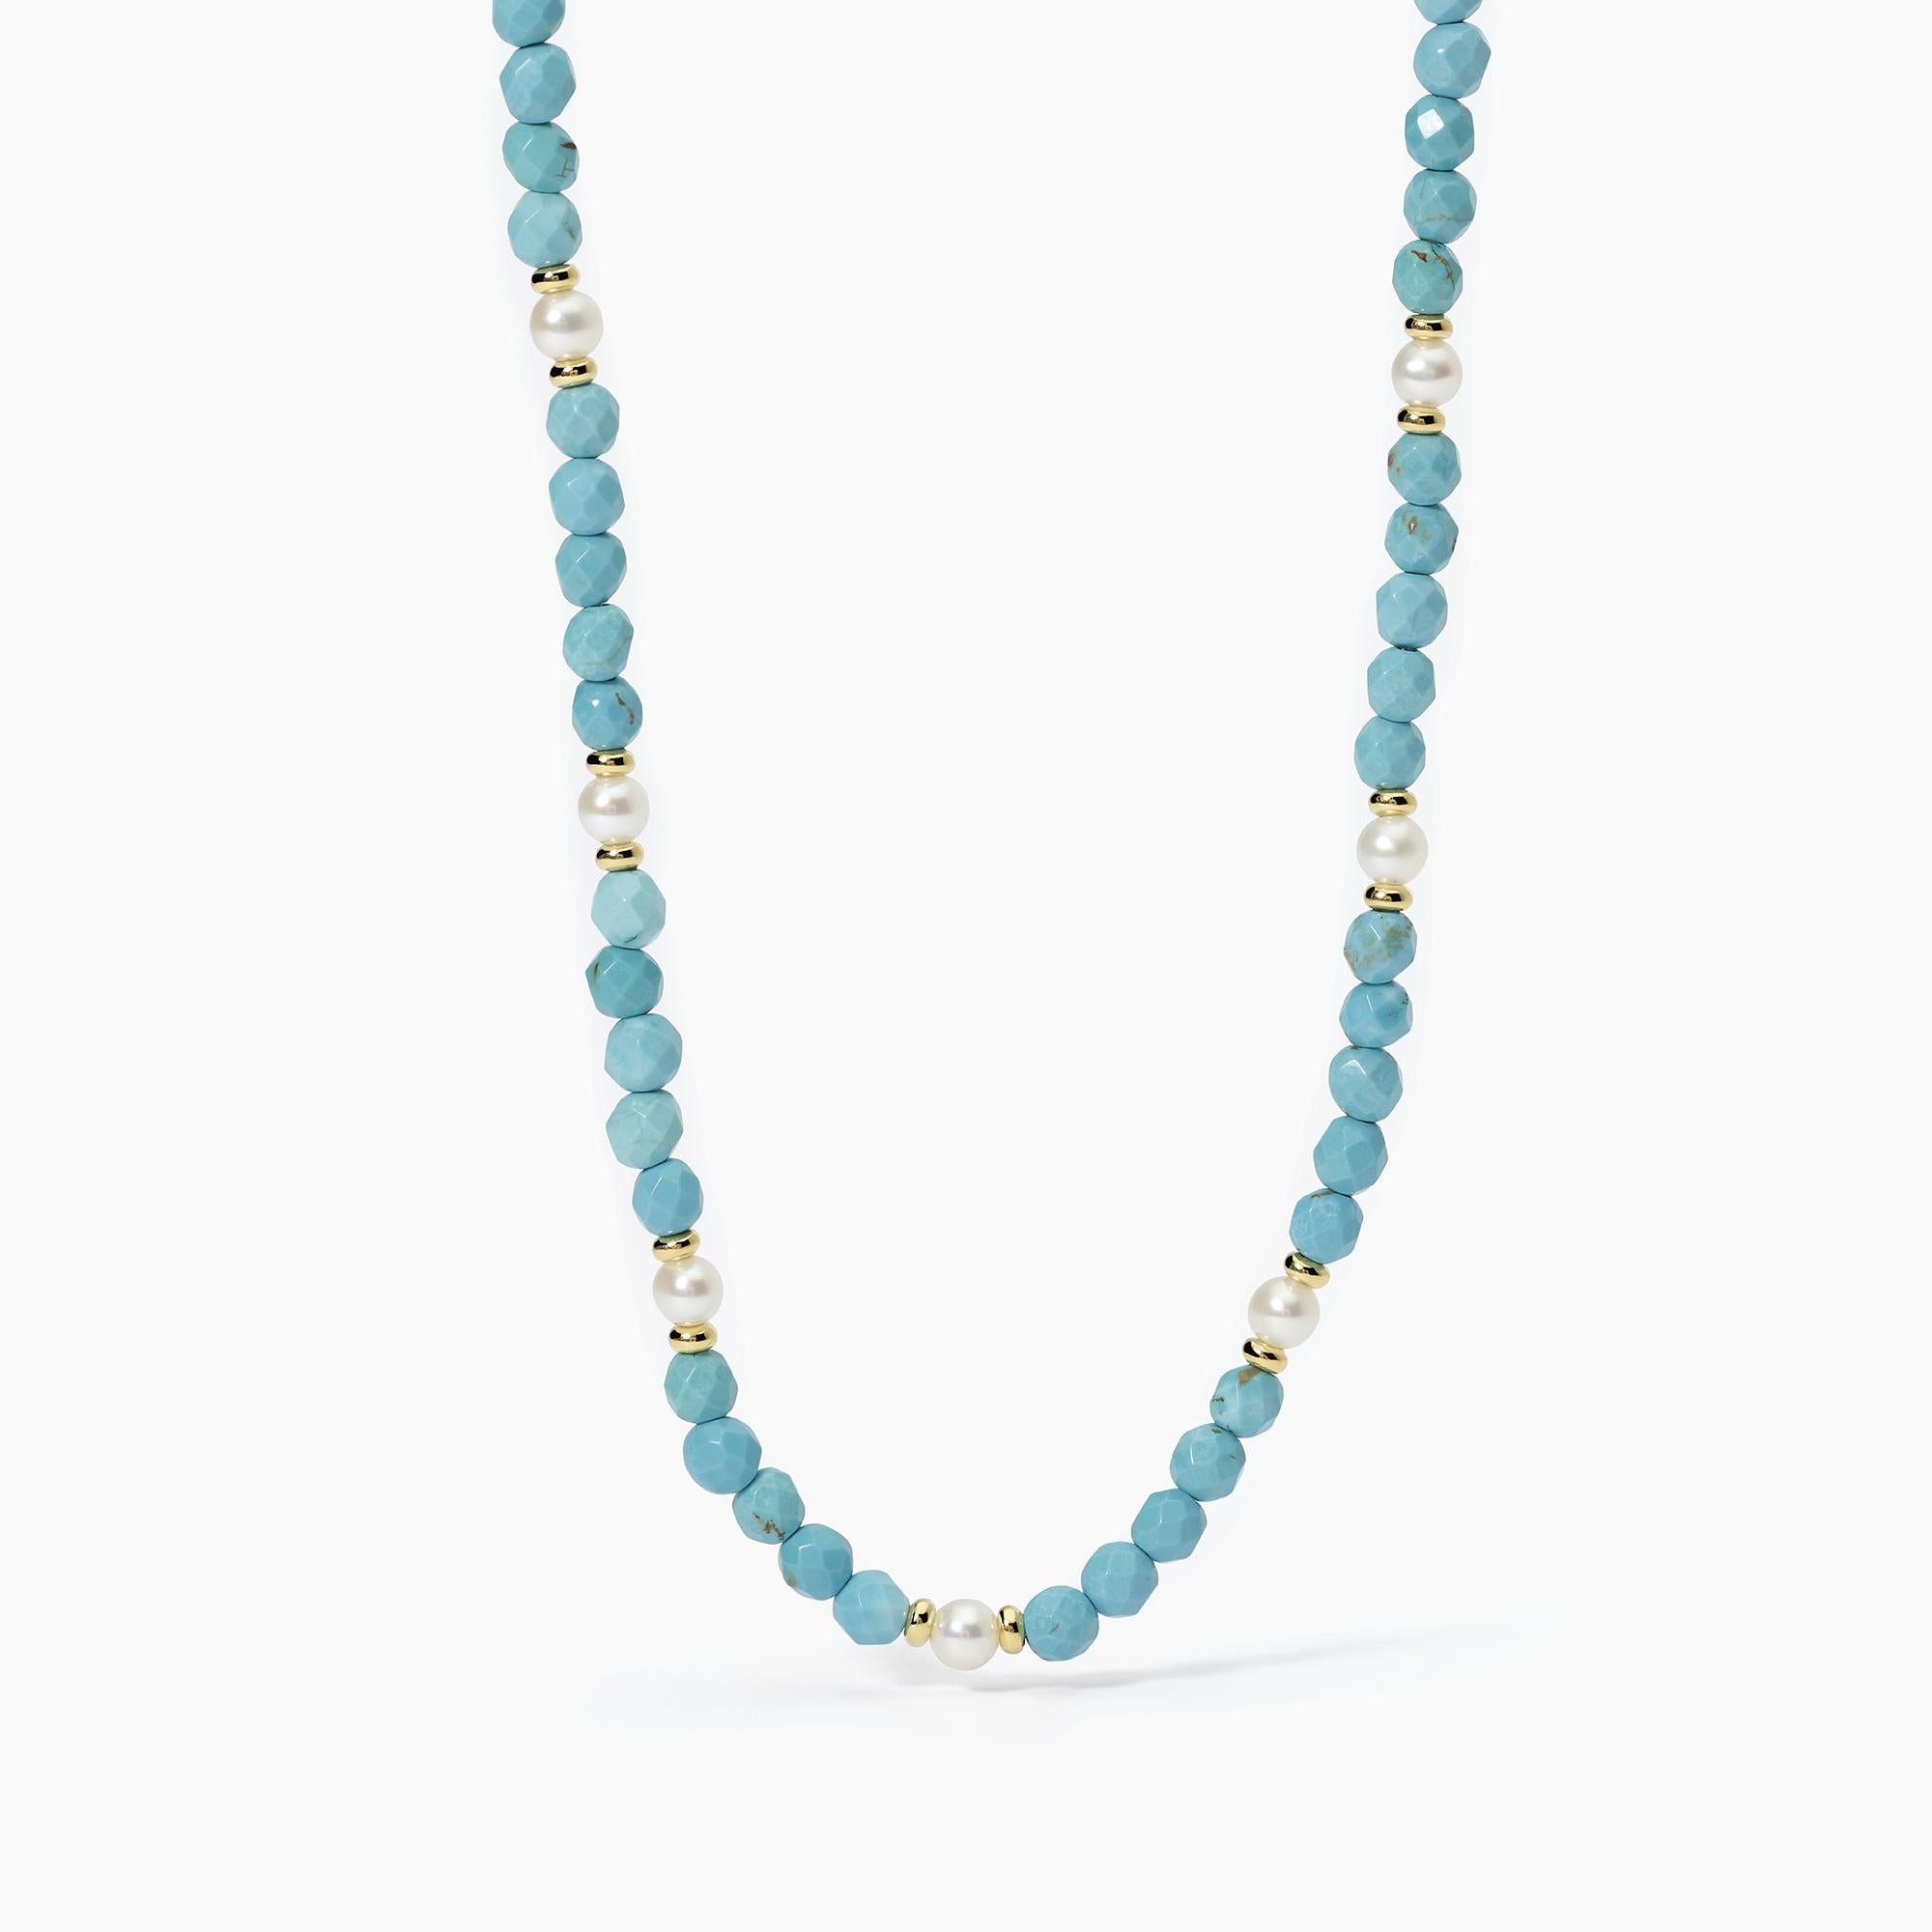 Mabina Donna - Girocollo con turchese e perle BEACH CODE - 553603